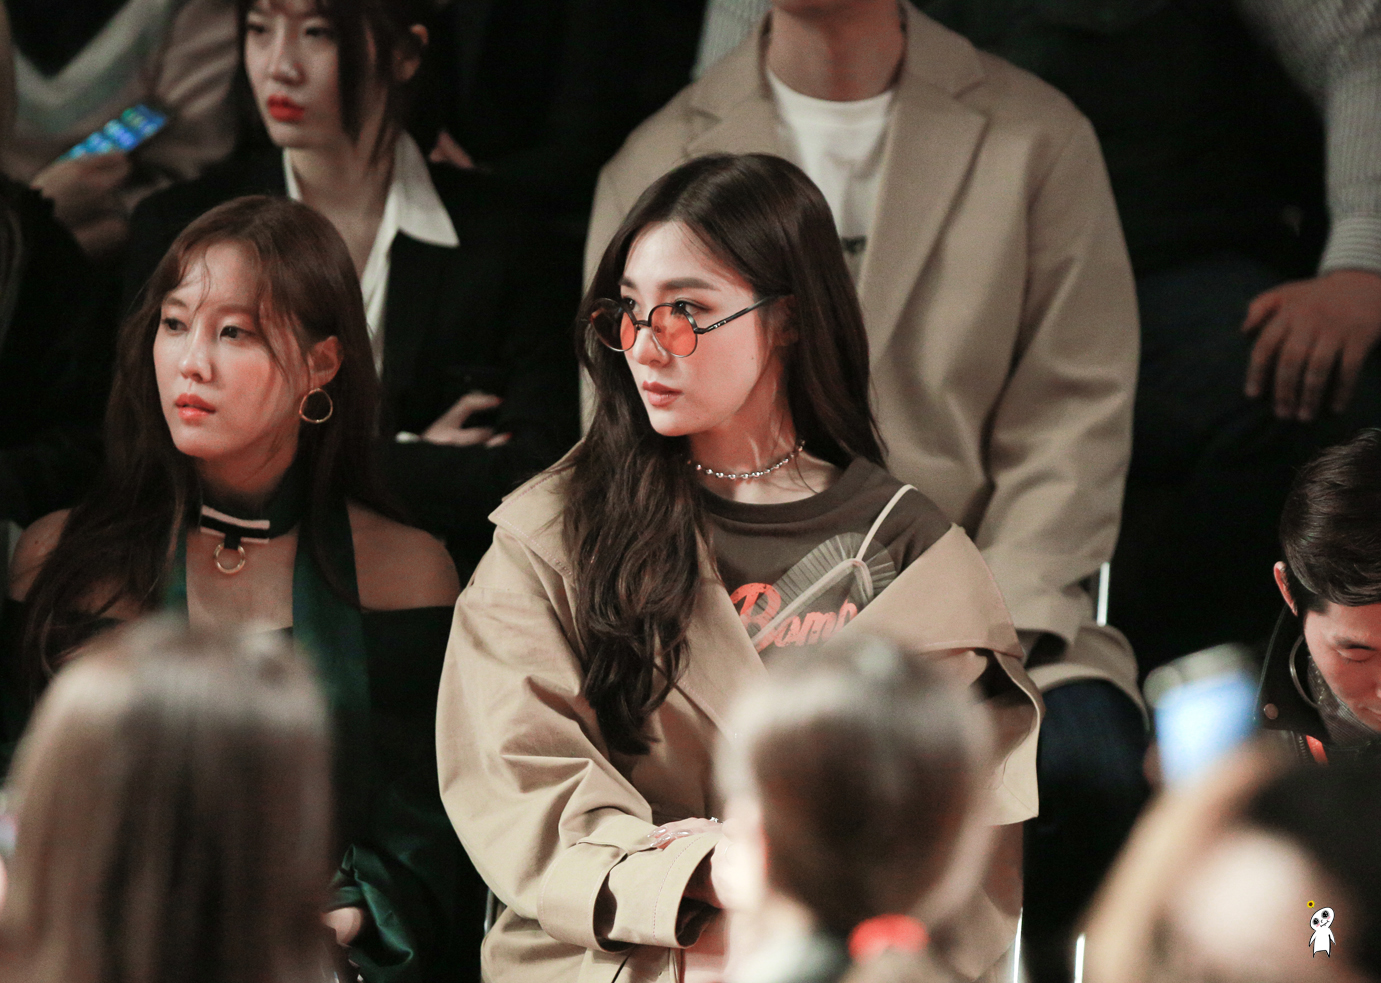 [PIC][29-03-2017]Tiffany tham dự sự kiện ra mắt BST Thu - Đông của thương hiệu "YCH" trong khuôn khổ "2017 S/S HERA Seoul Fashion Week" vào chiều nay - Page 3 24791150590AFE84109951